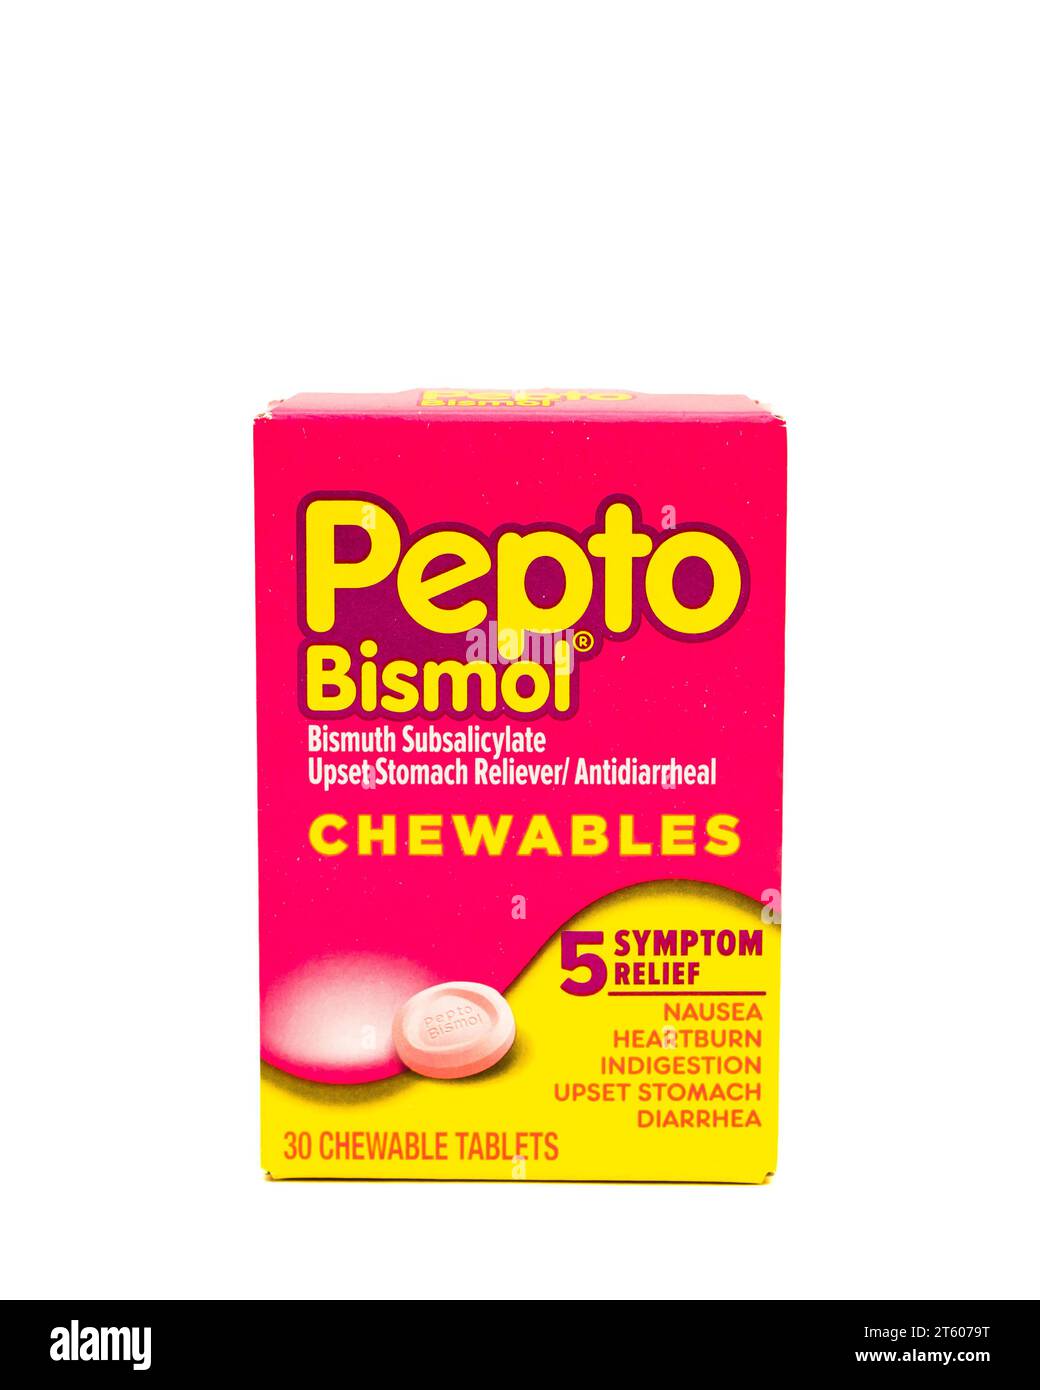 Immagine di una scatola di compresse masticabili di Pepto Bismol per alleviare disturbi di stomaco, bruciore, nausea e diarrea Foto Stock